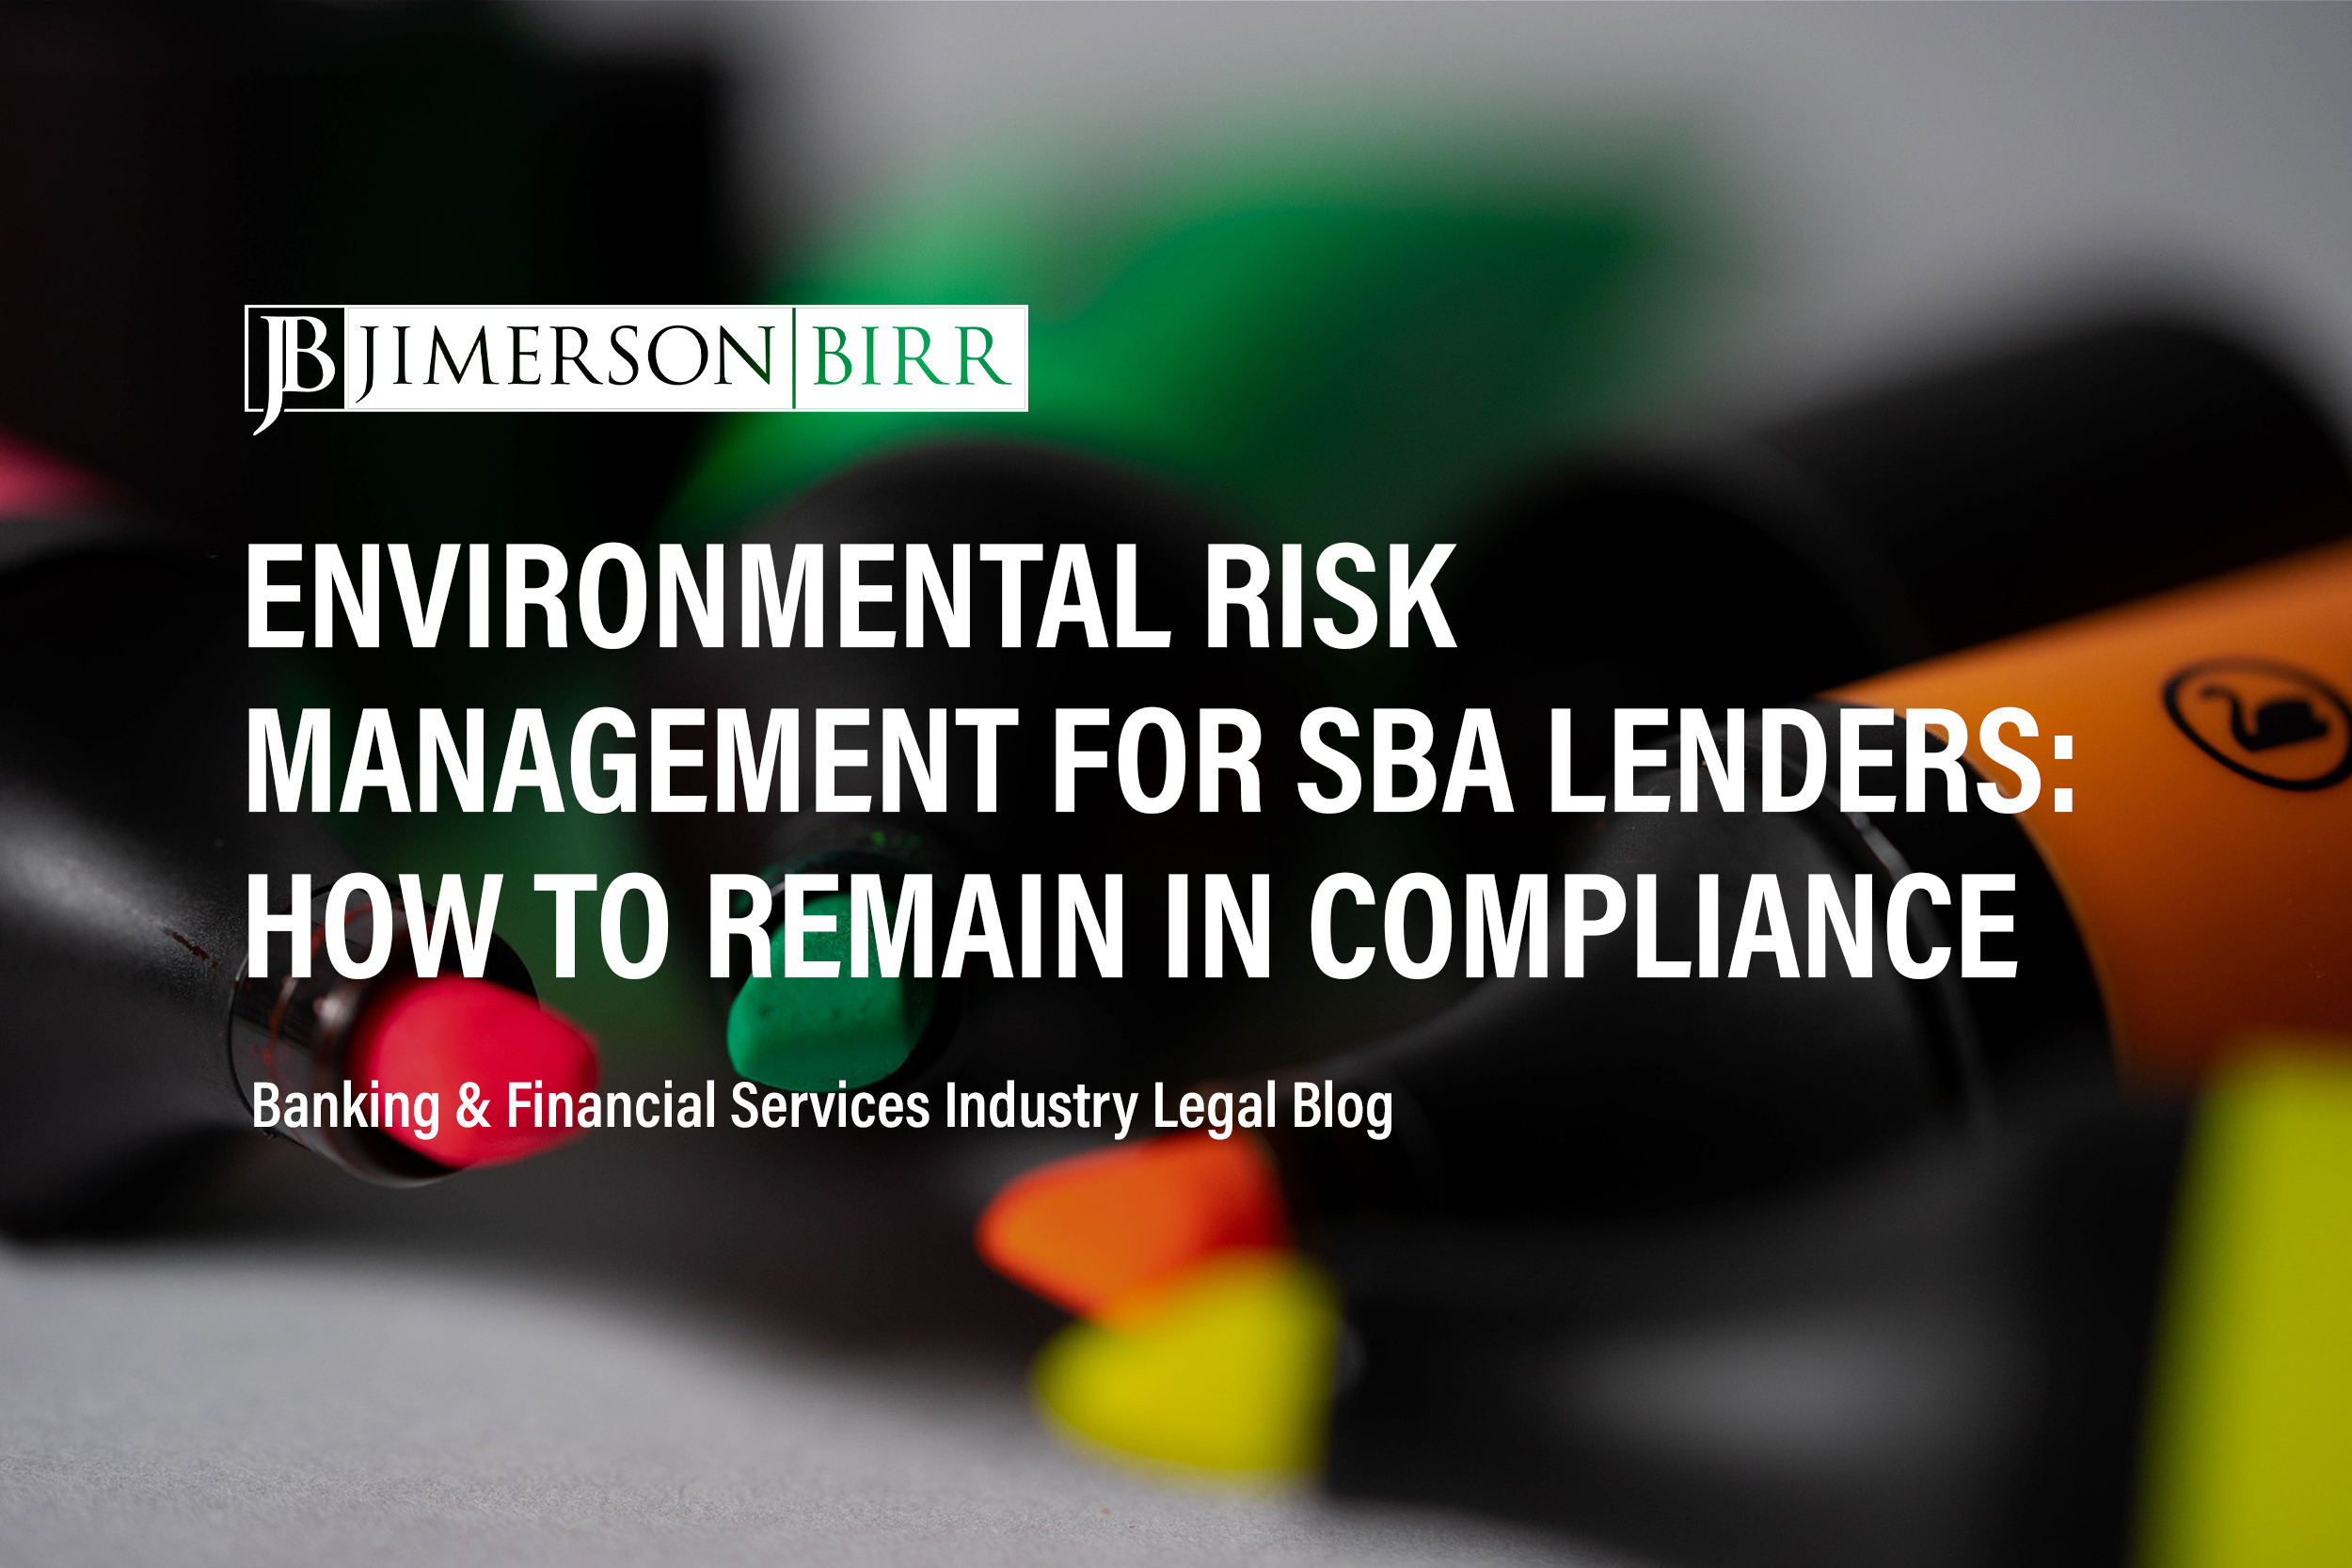 Post-Default Environmental Risk Management for SBA Lenders